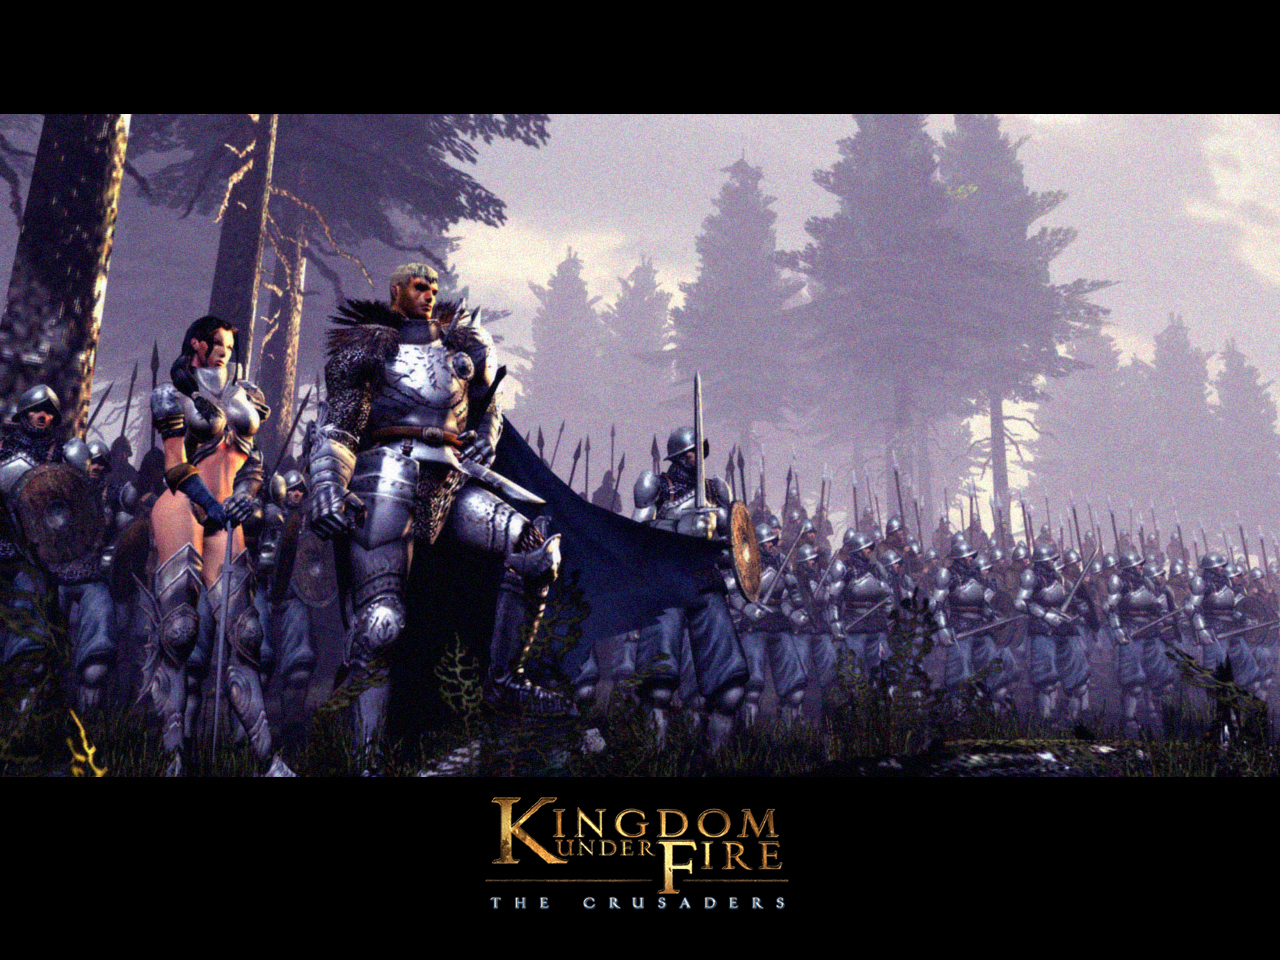 16 年前策略遊戲 熾焰帝國 十字軍東征 預定2 月28 日登陸pc 平台